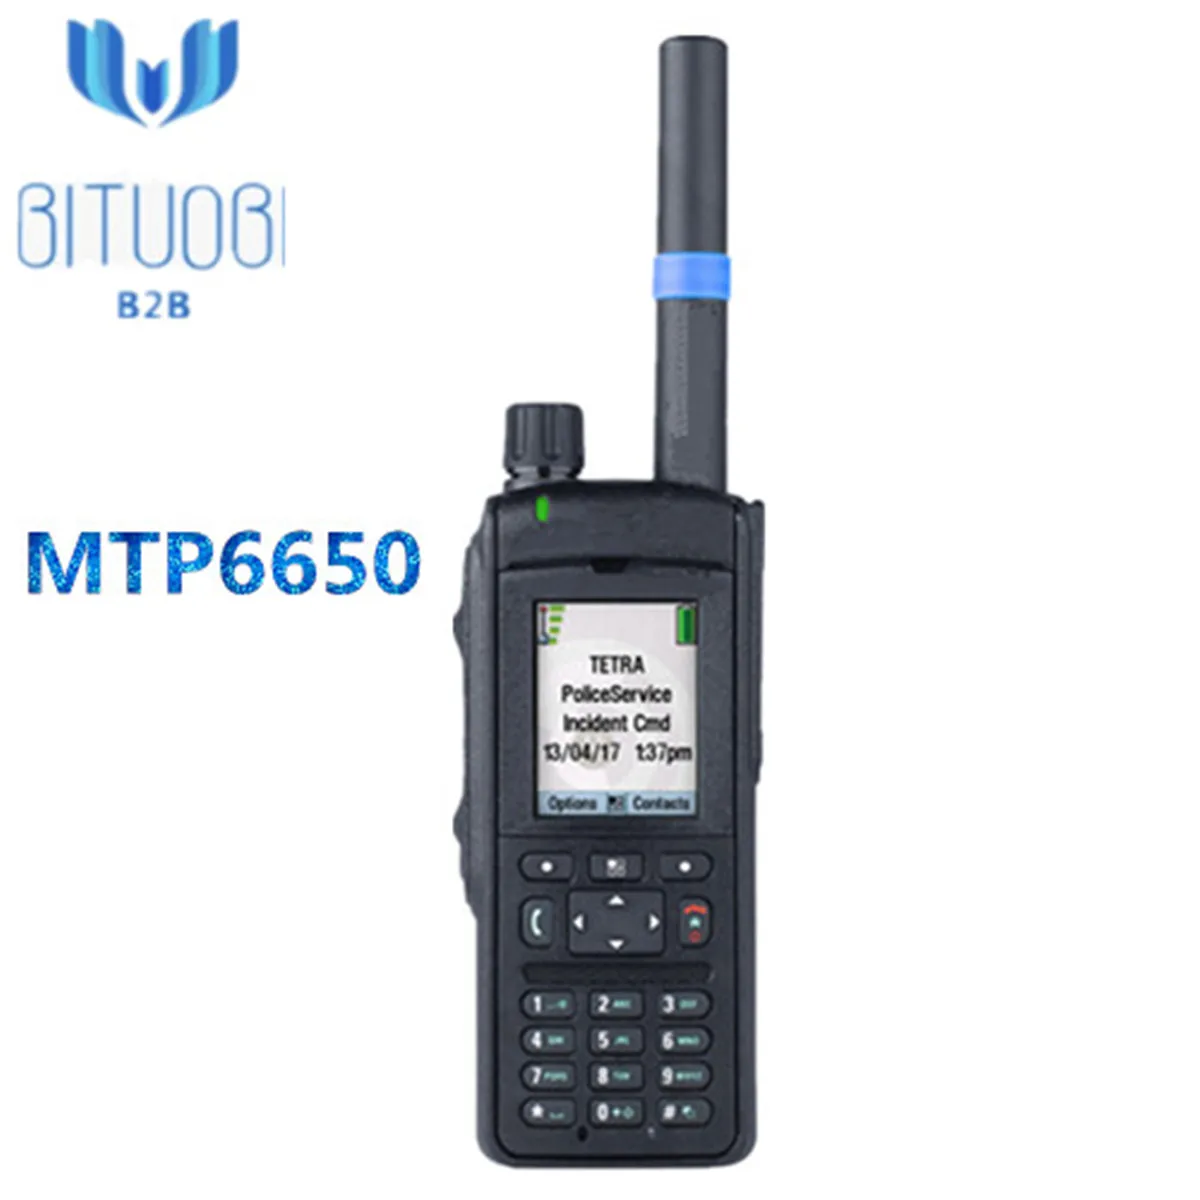 MTP6650 TETRA Портативное двухстороннее радио для обеспечения безопасности с частотой 350-470 МГц gps Bluetooth 4,1 цветным дисплеем SMA разъем